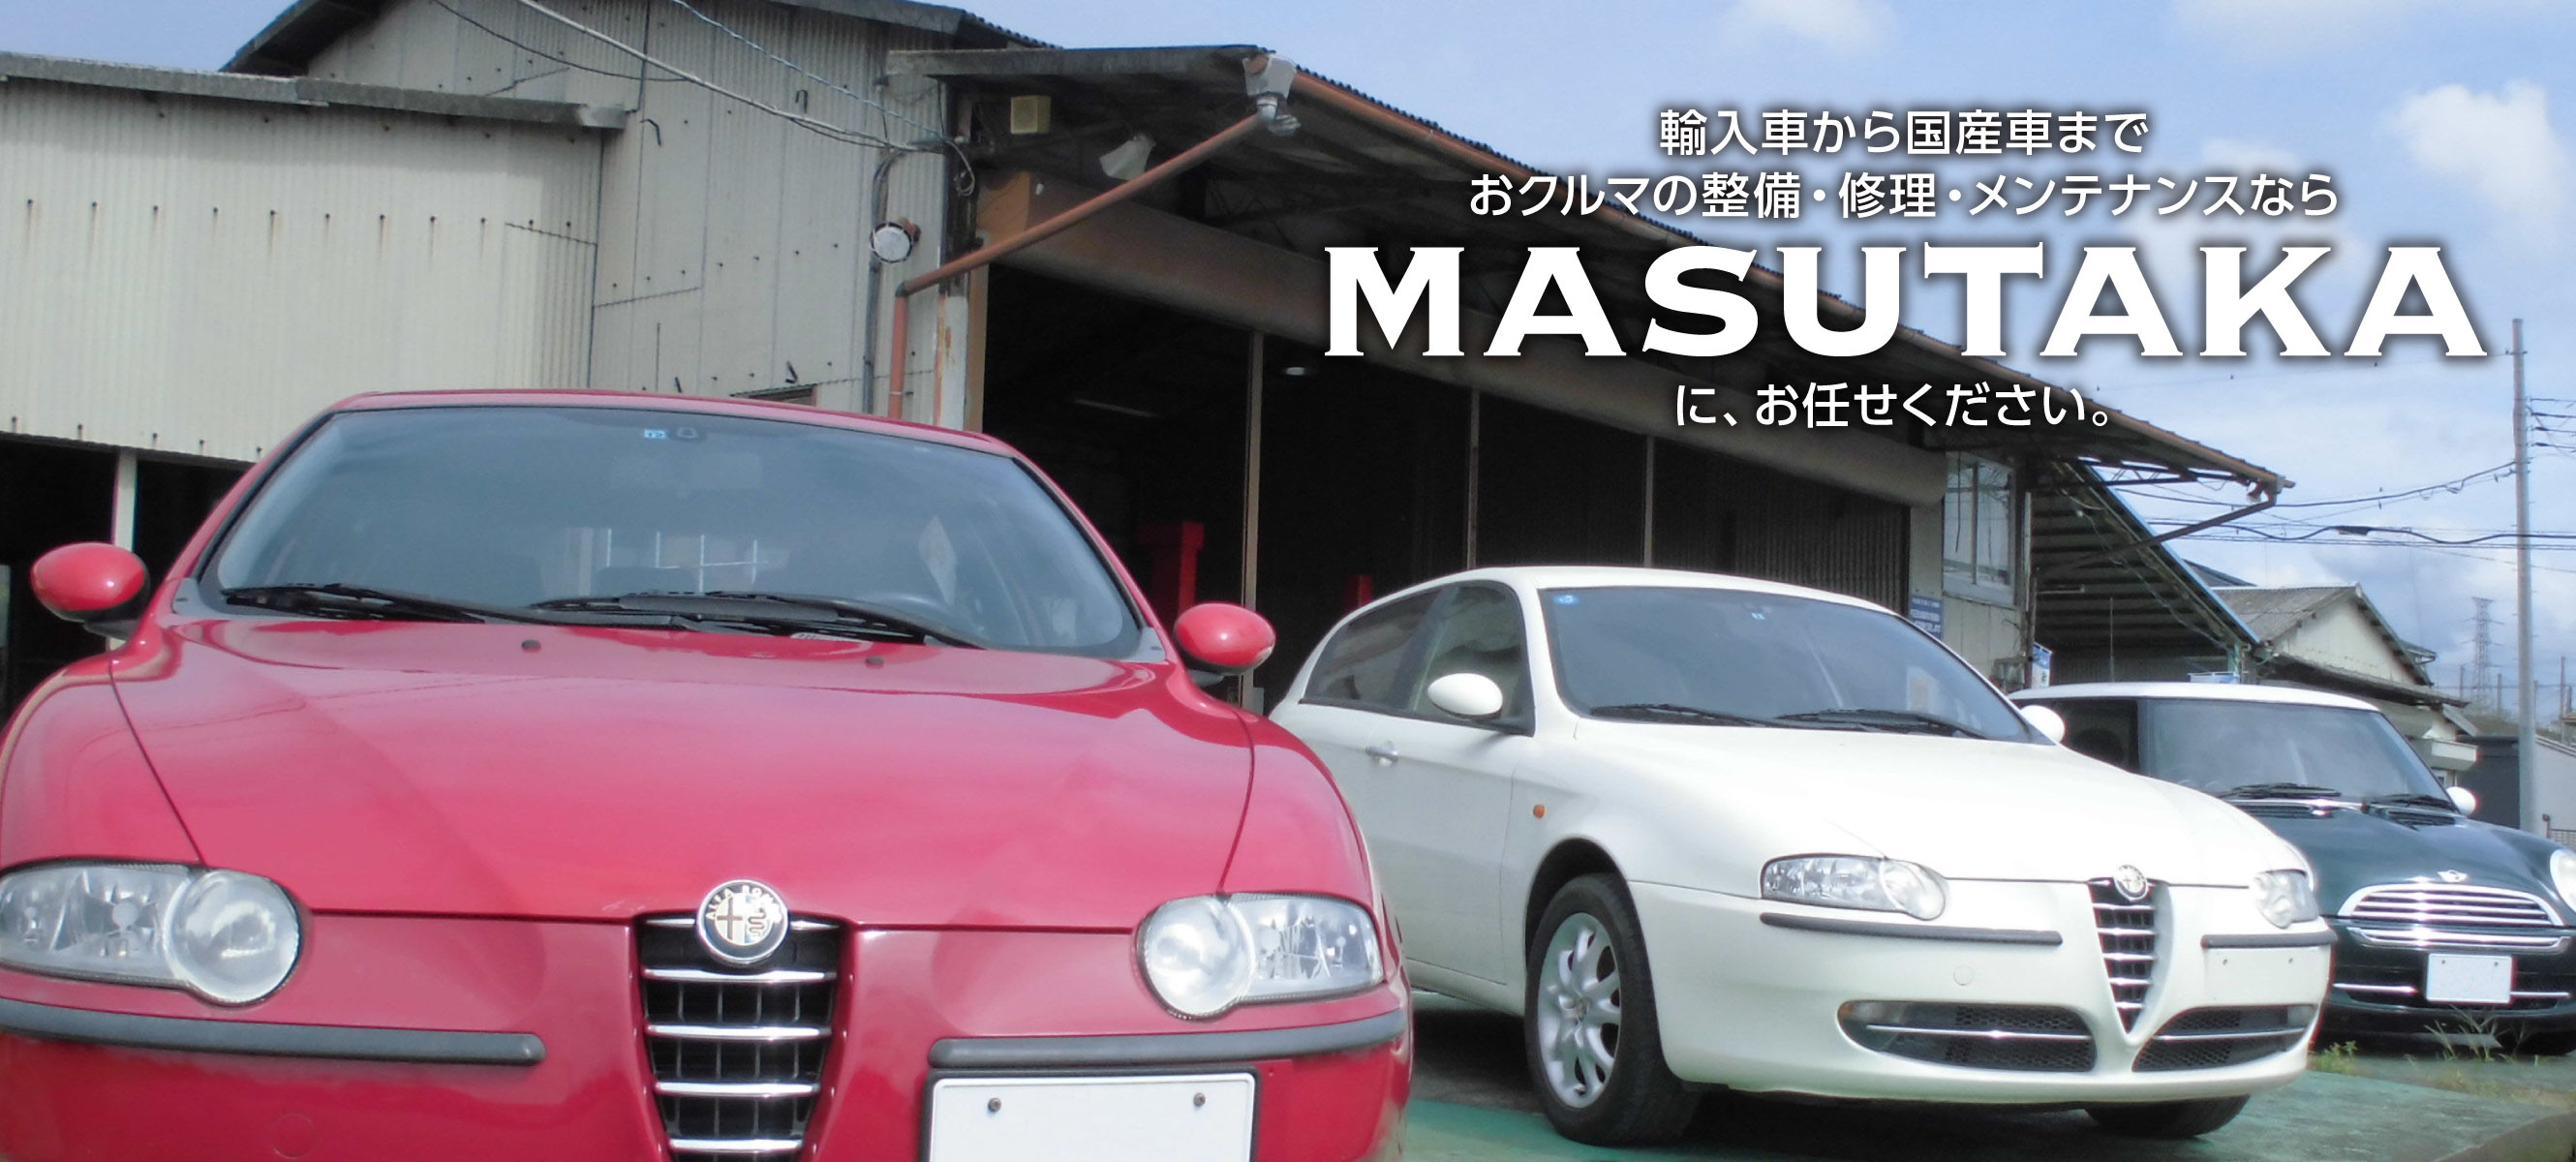 輸入車から国産車までおクルマの整備・修理・メンテナンスならMASUTAKAにお任せください